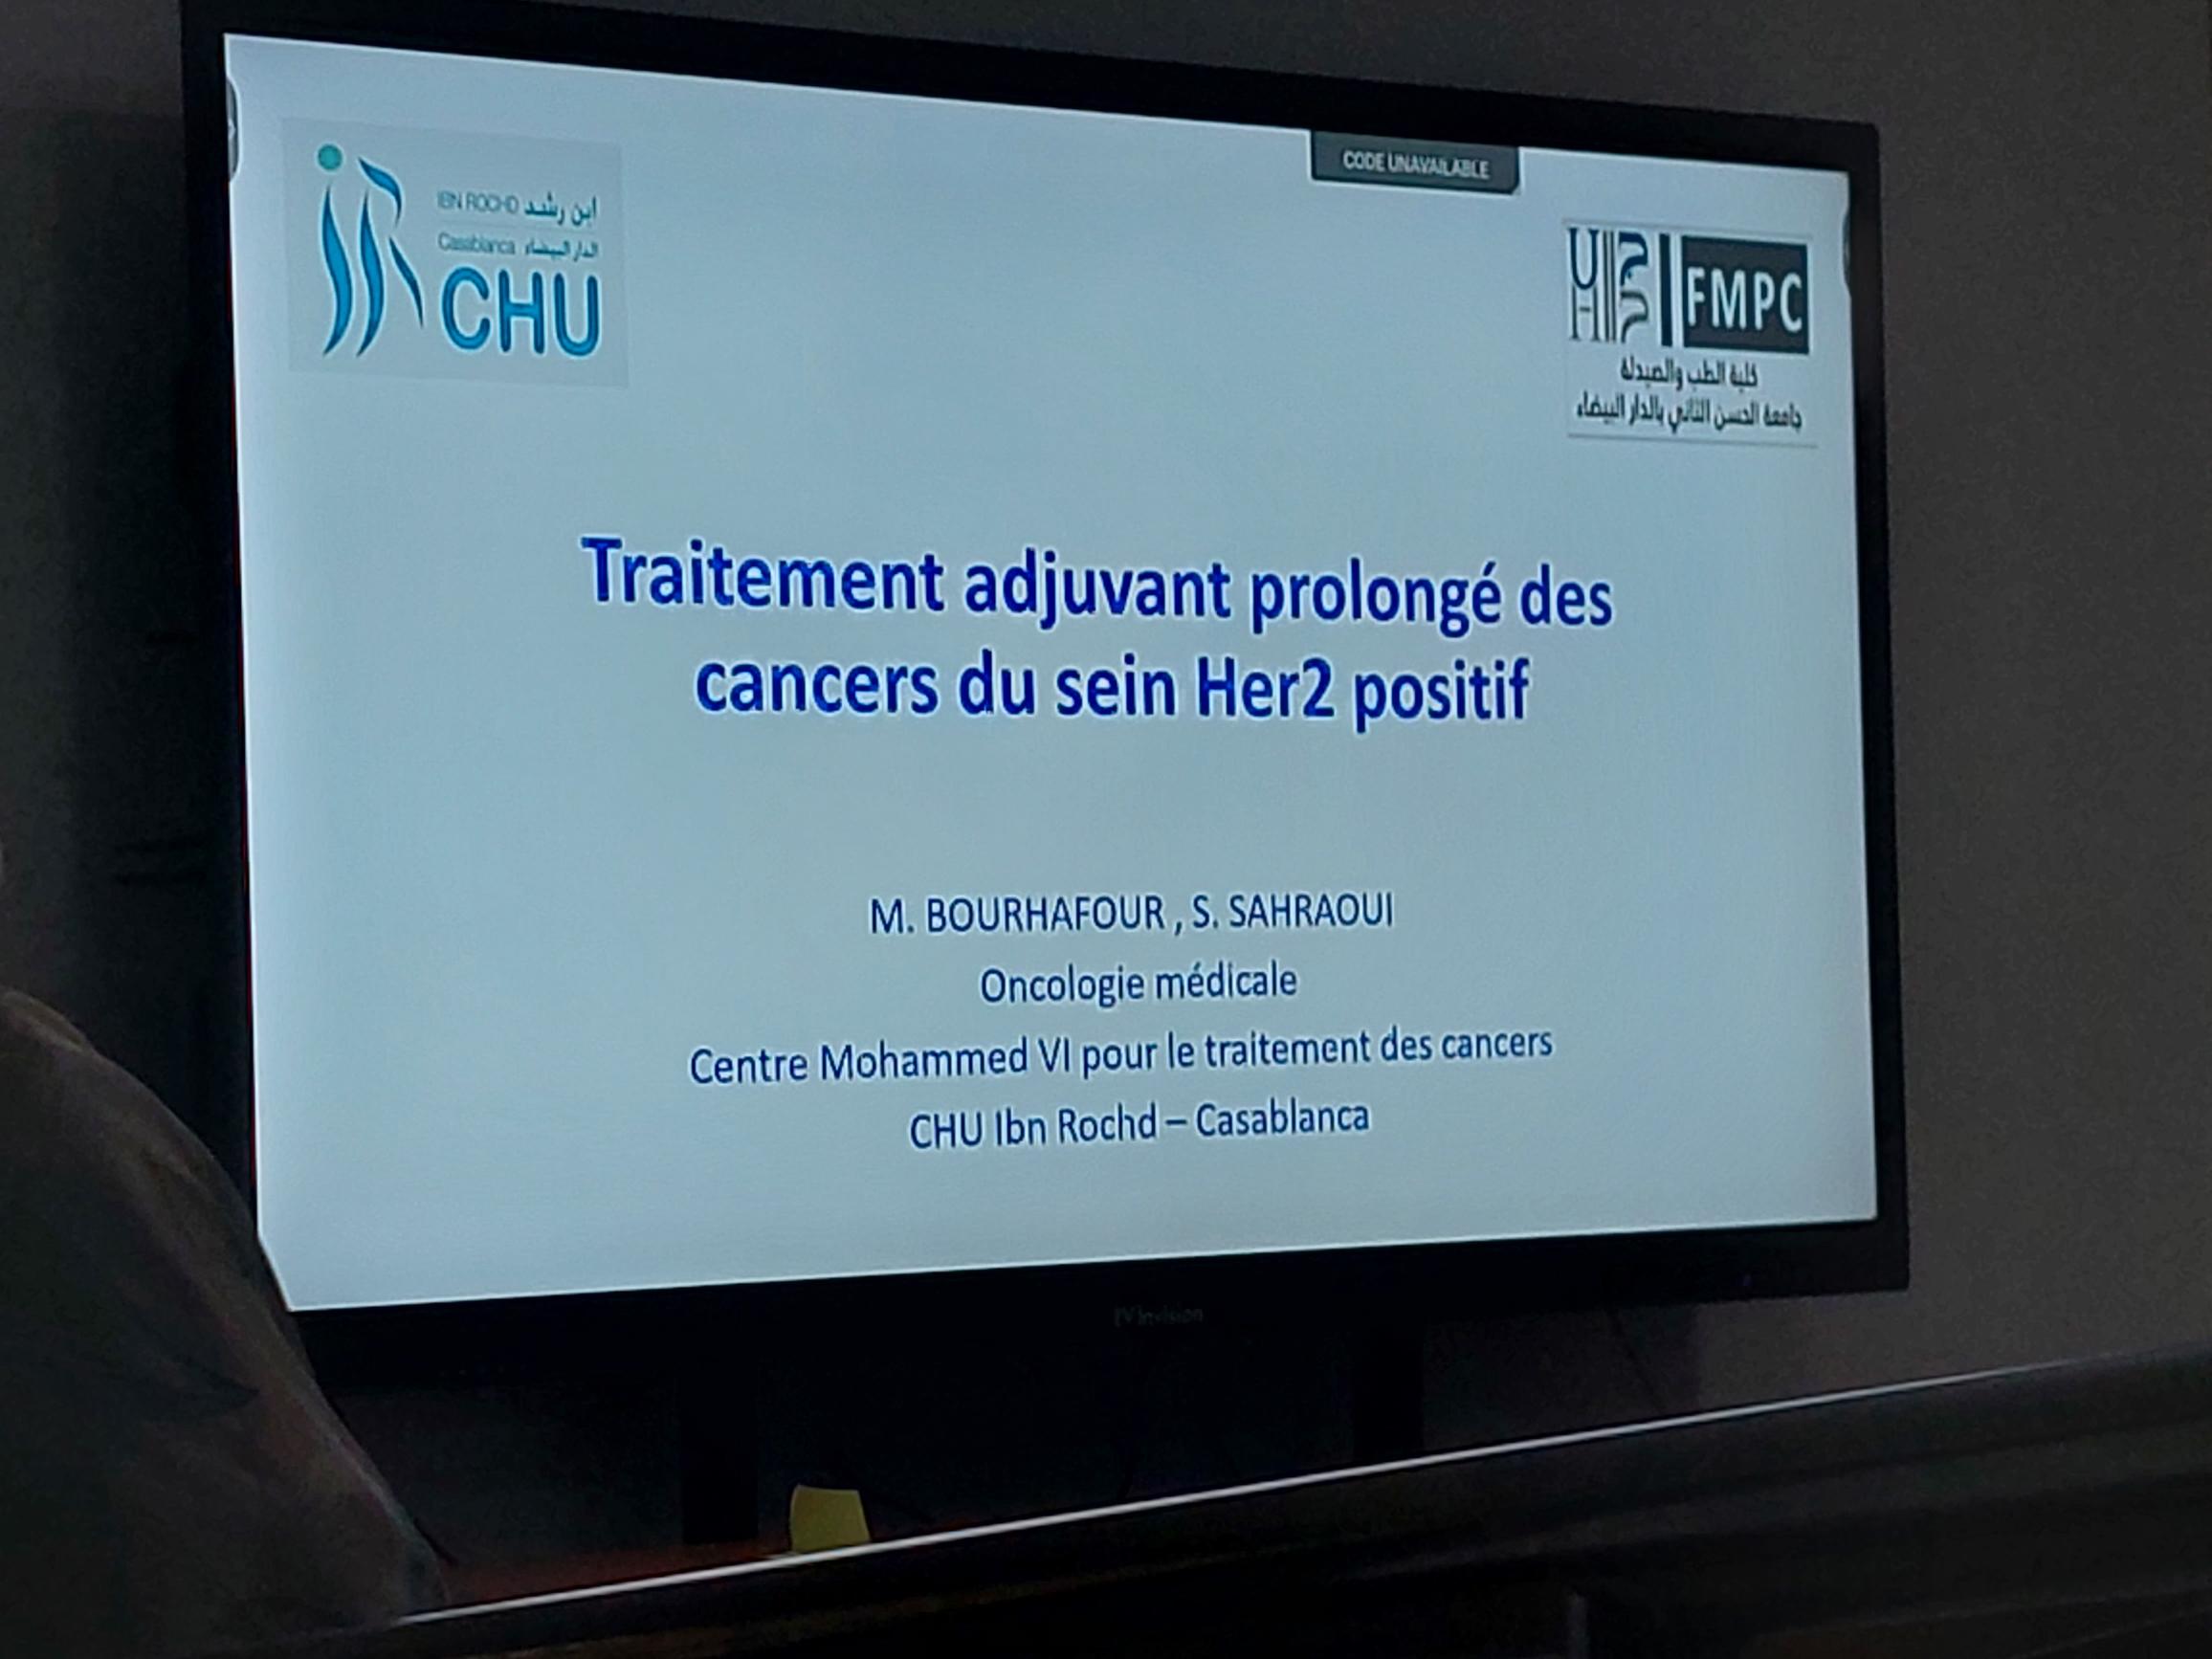 Table Ronde sur le Neratinib au Centre de Traitement des Cancers Mohamed VI au CHU de Casablanca sponsorisée par Pierre Fabre